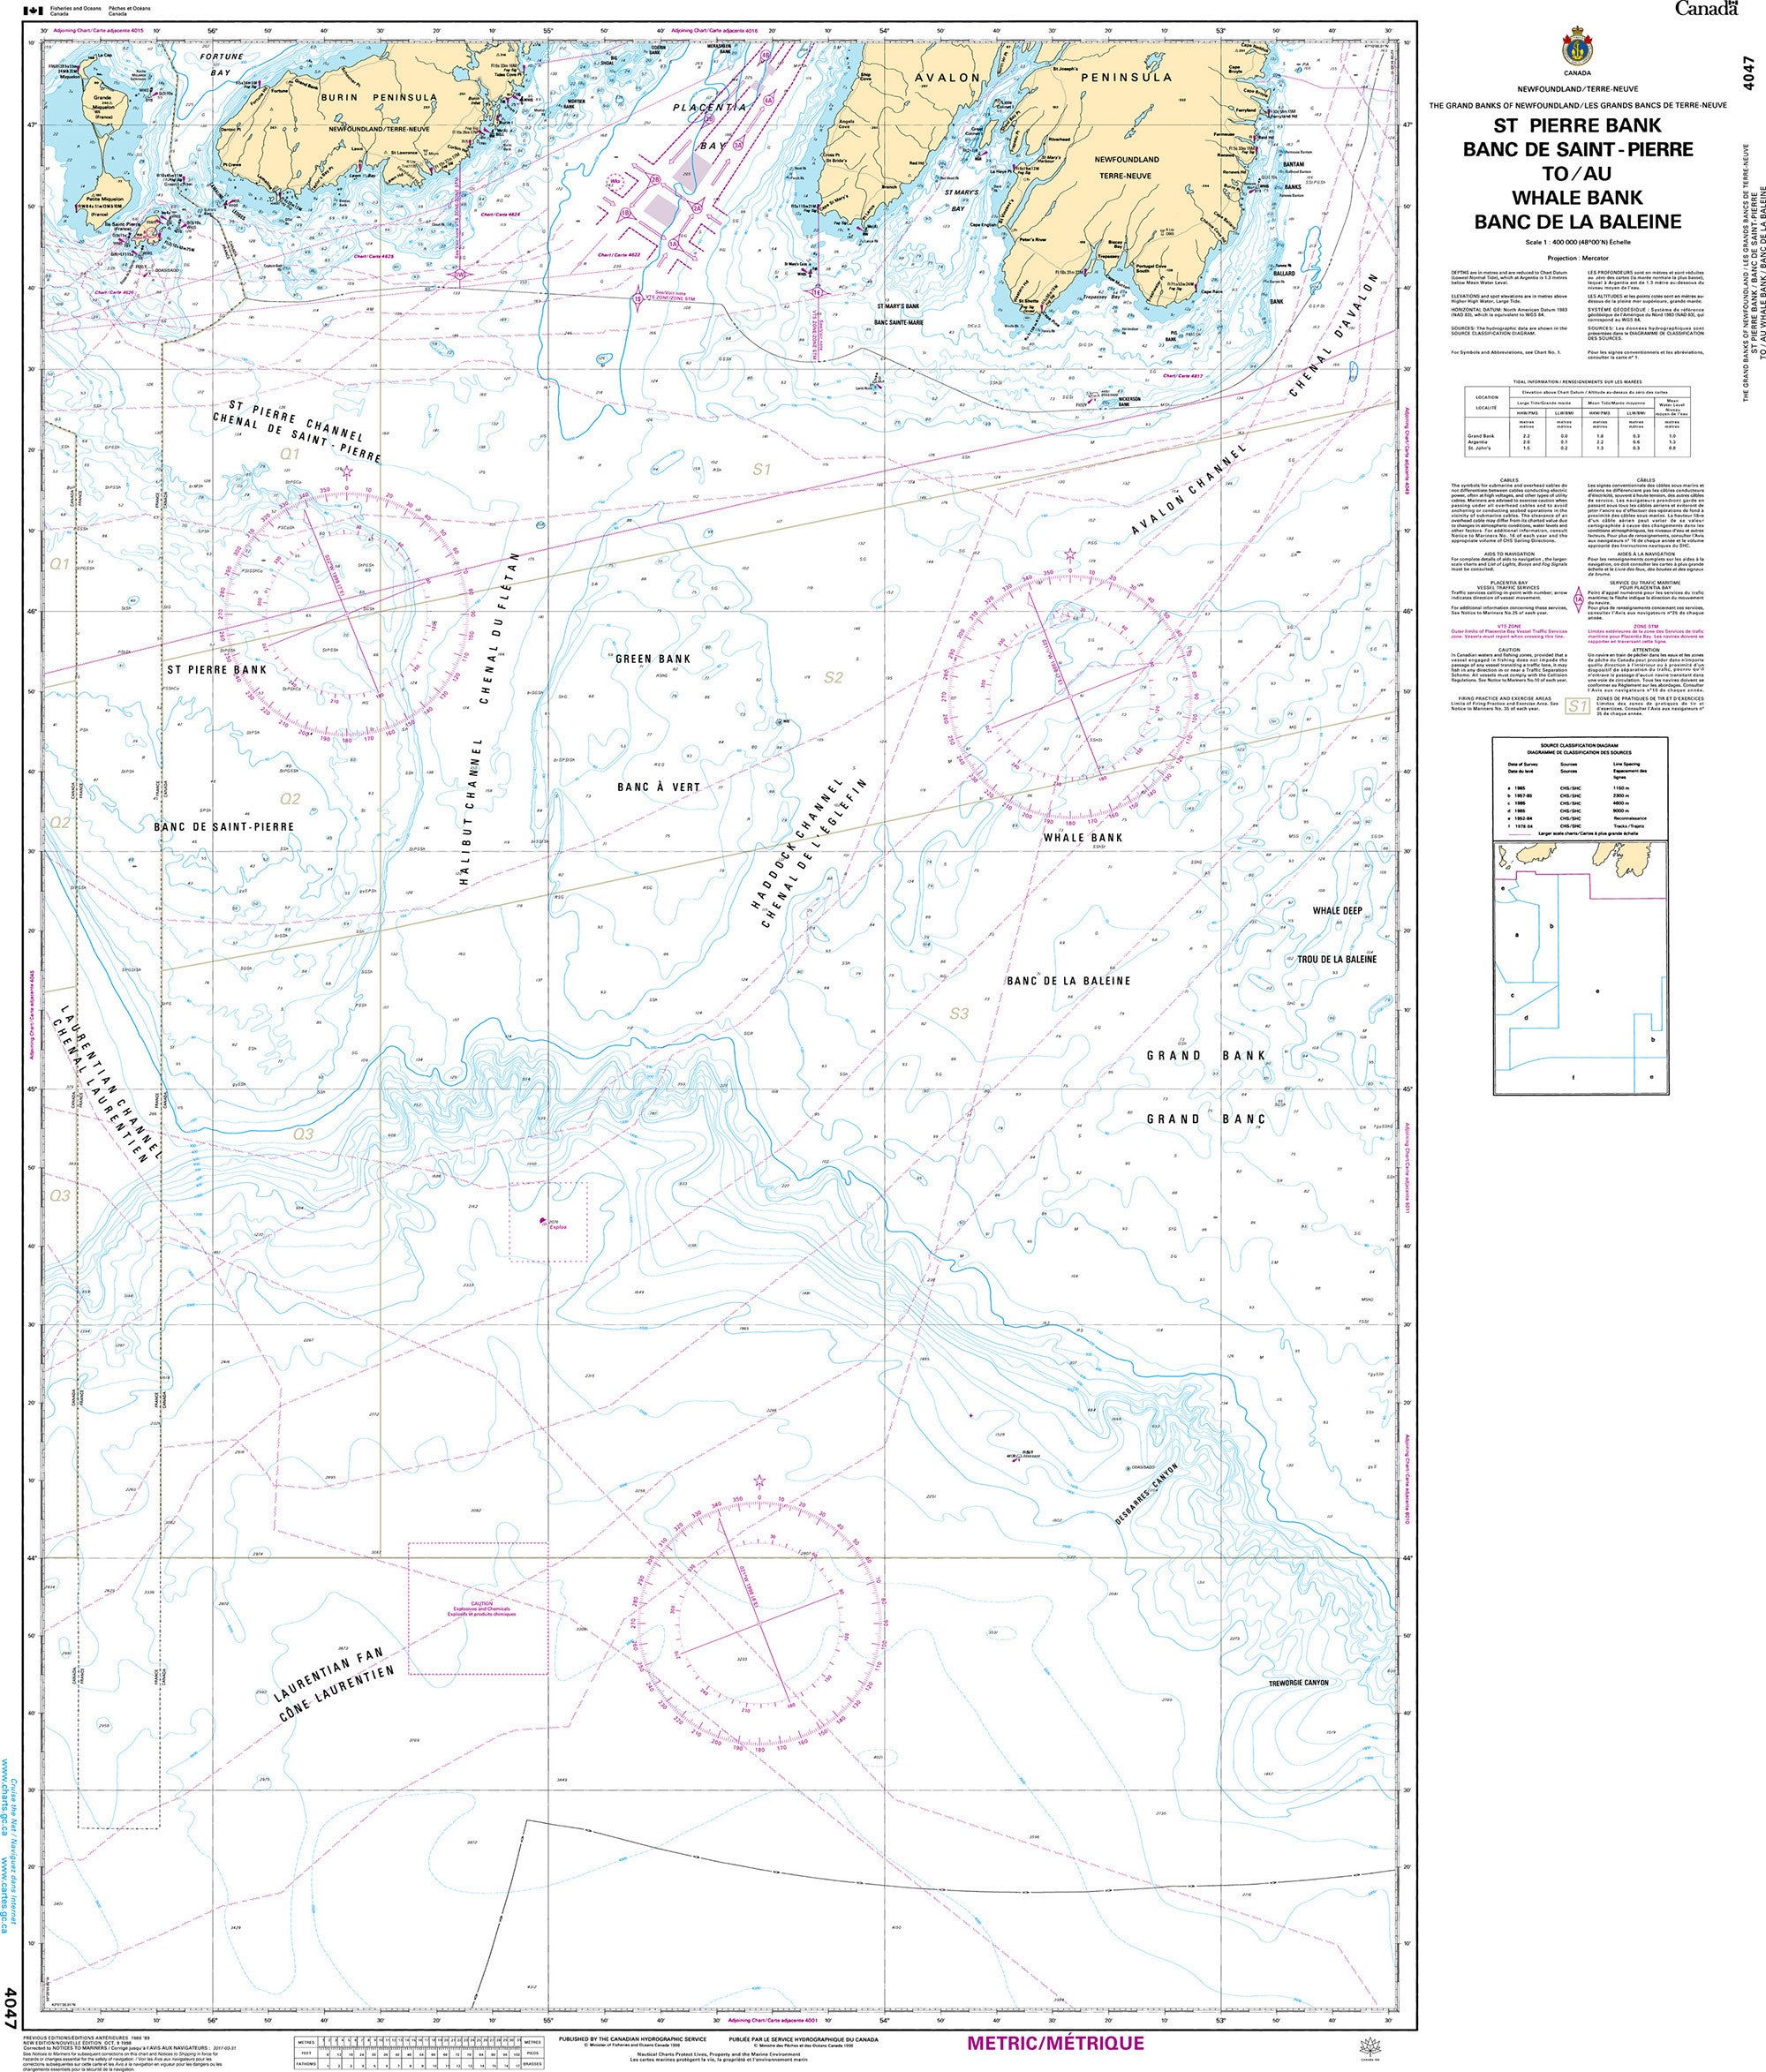 Canadian Hydrographic Service Nautical Chart CHS4047: St. Pierre Bank/Banc de Saint-Pierre to/au Whale Bank/Banc de la Baleine